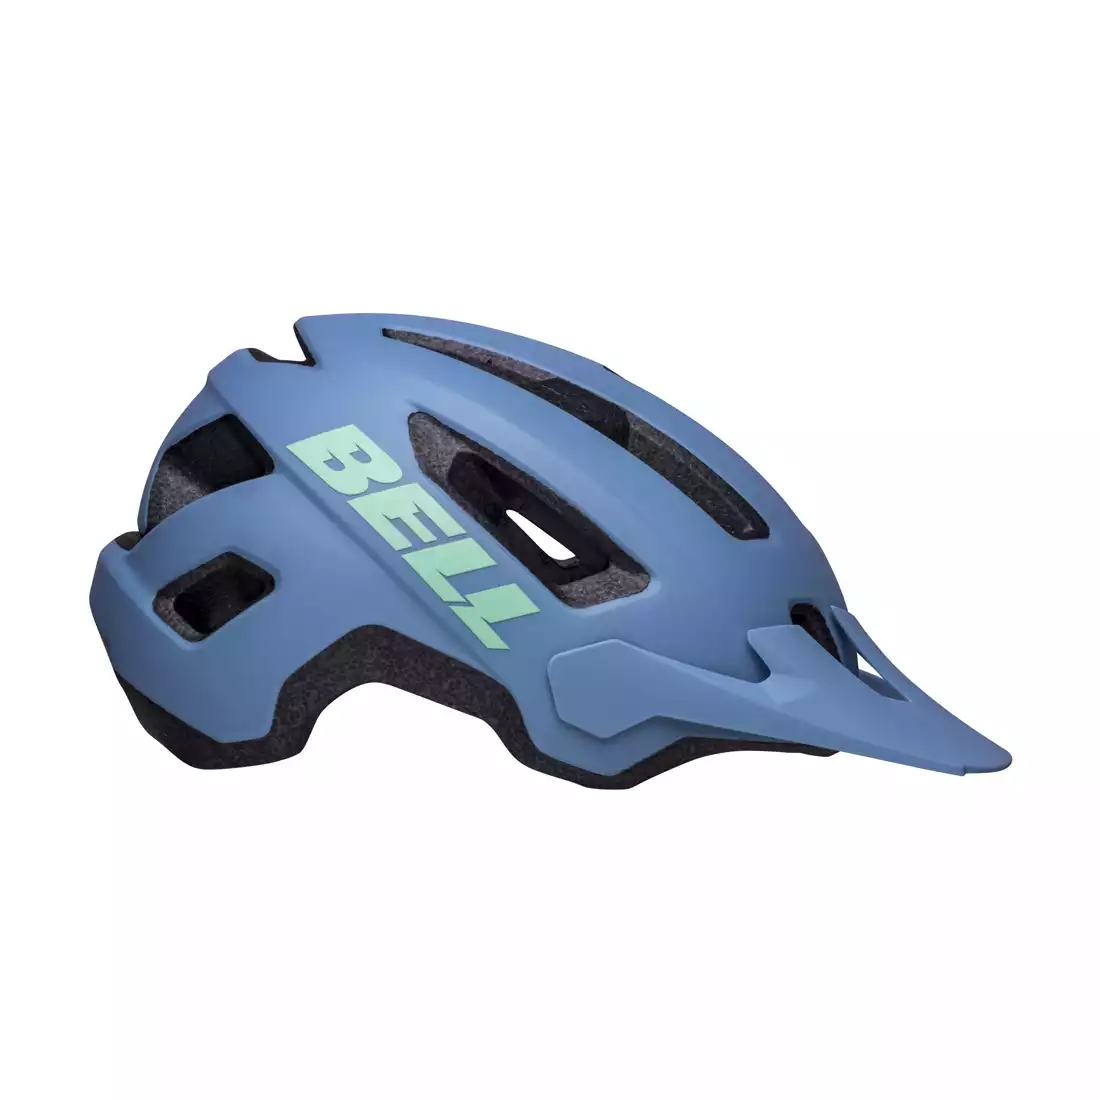 BELL NOMAD 2 Bicycle helmet MTB, Blue